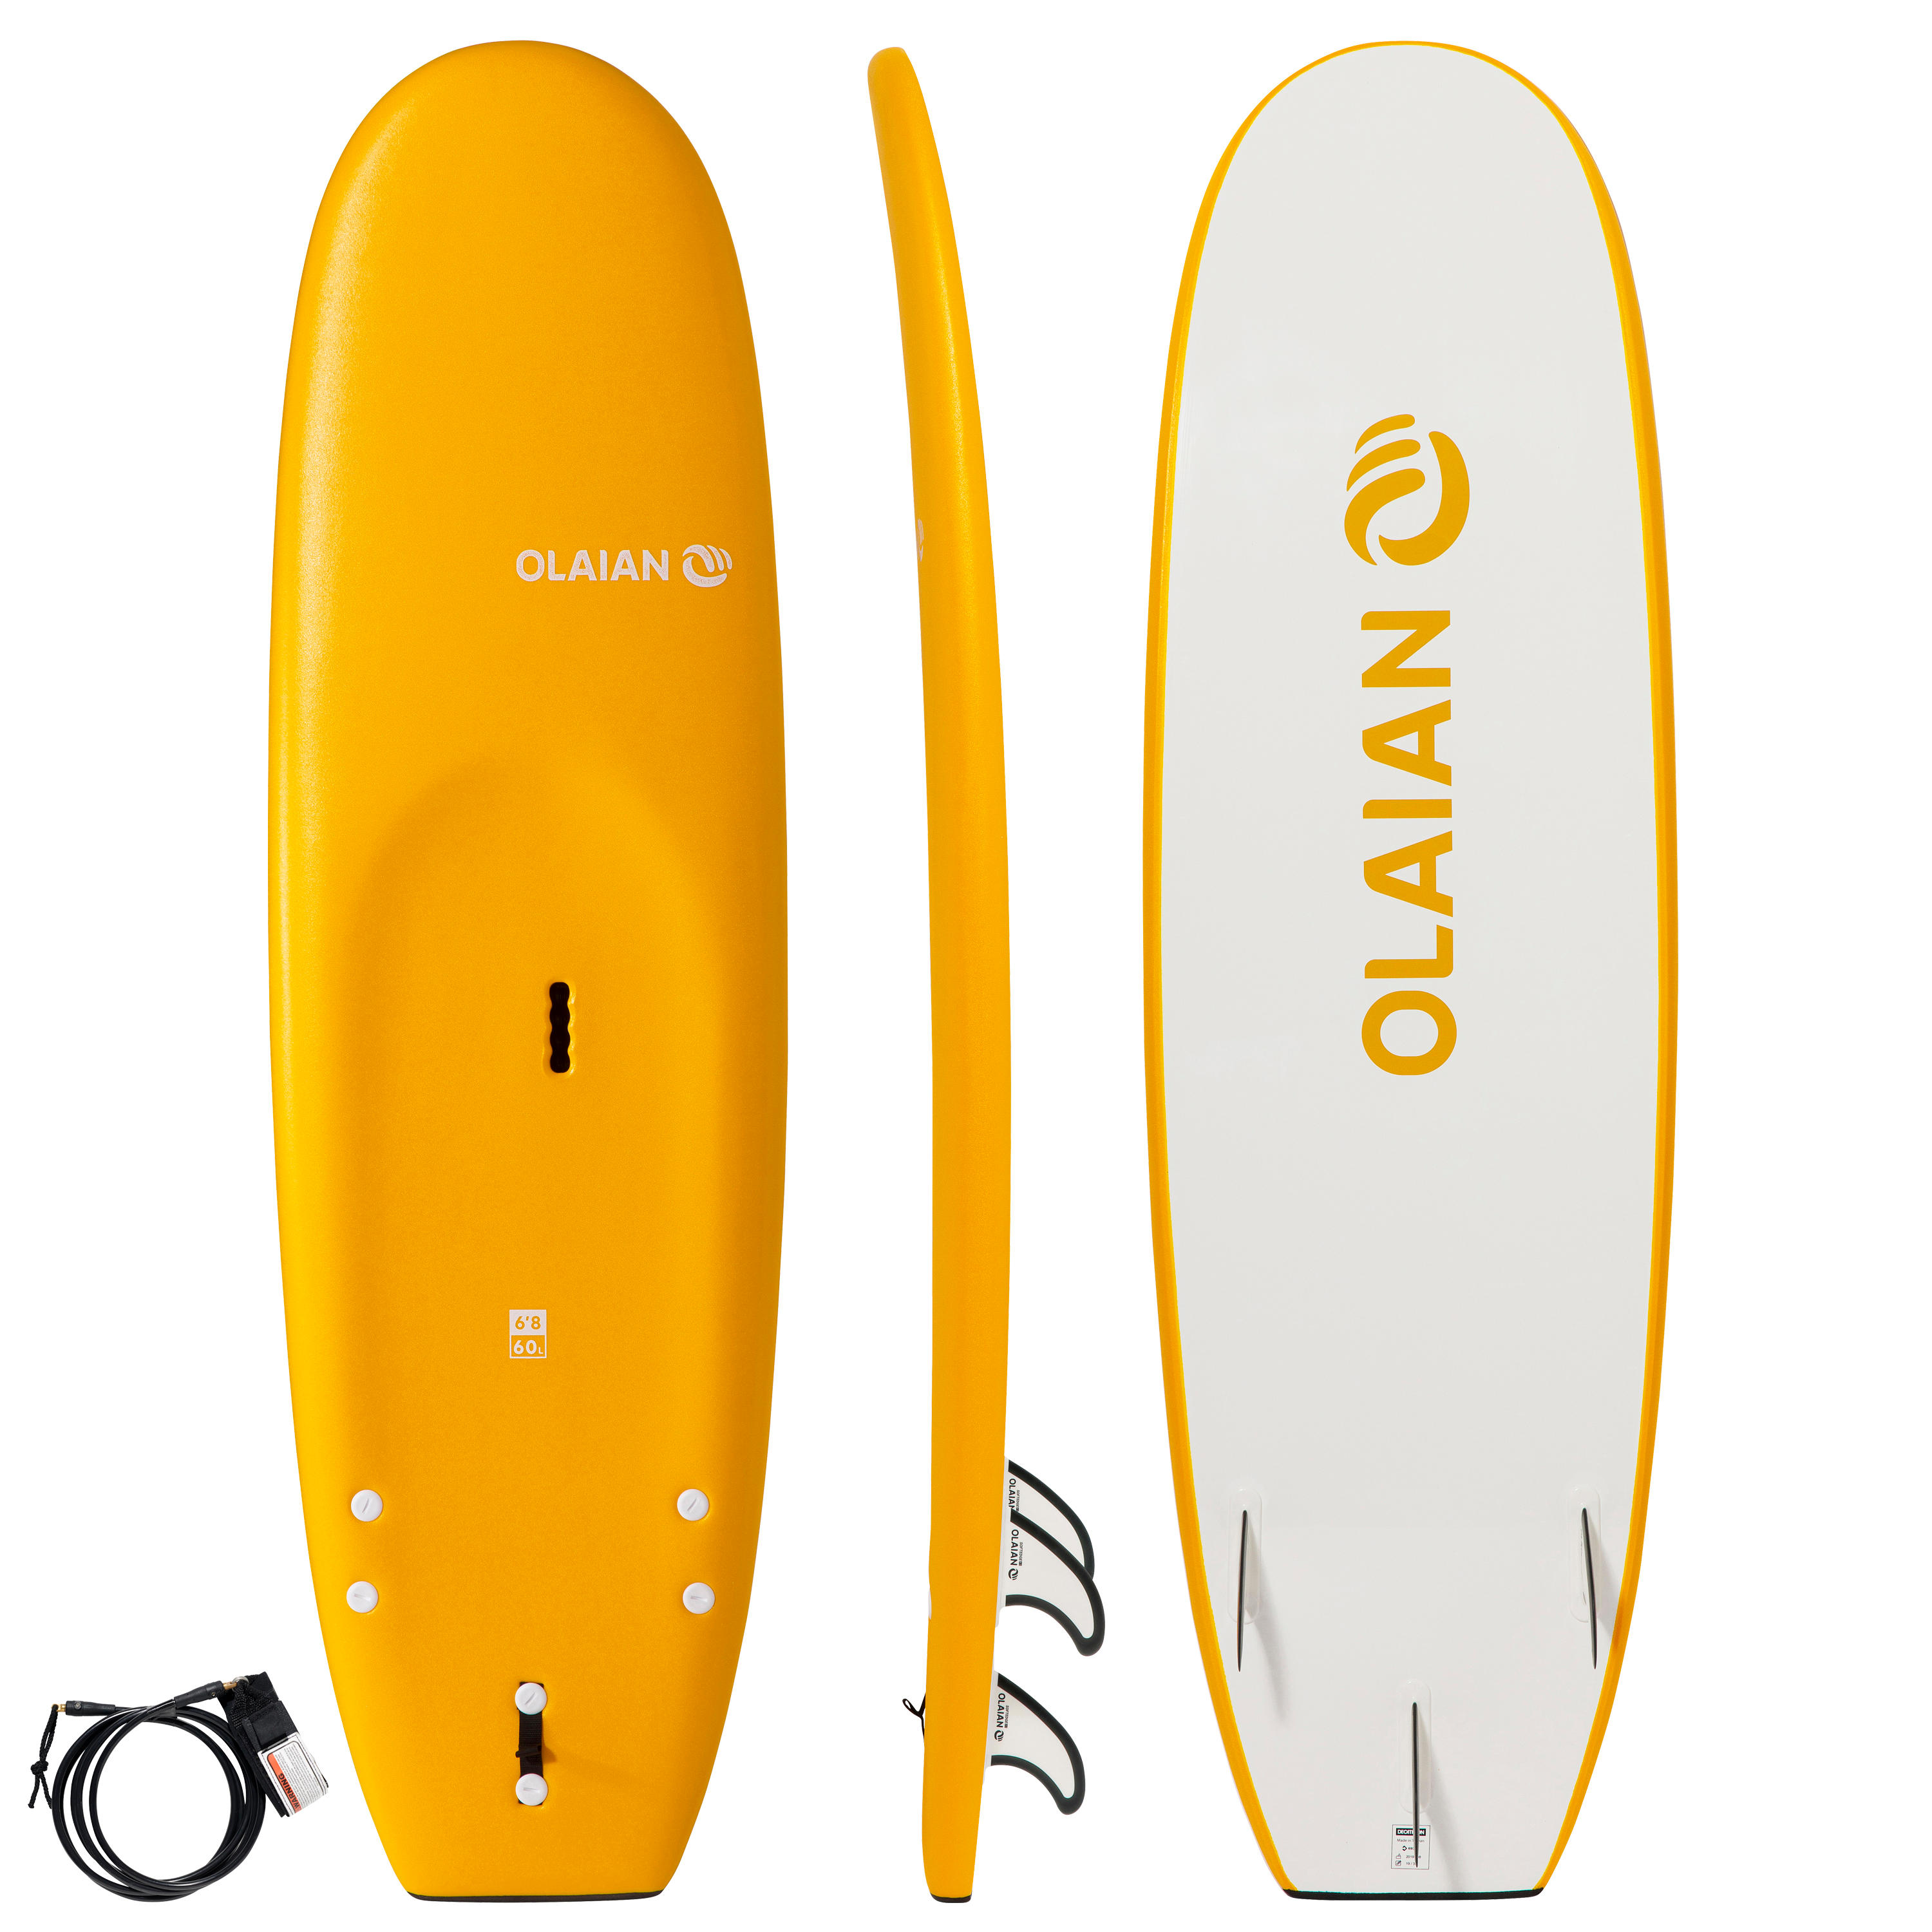 Placă din spumă surf 100 6’8″ + leash + 3 înotătoare La Oferta Online decathlon imagine La Oferta Online